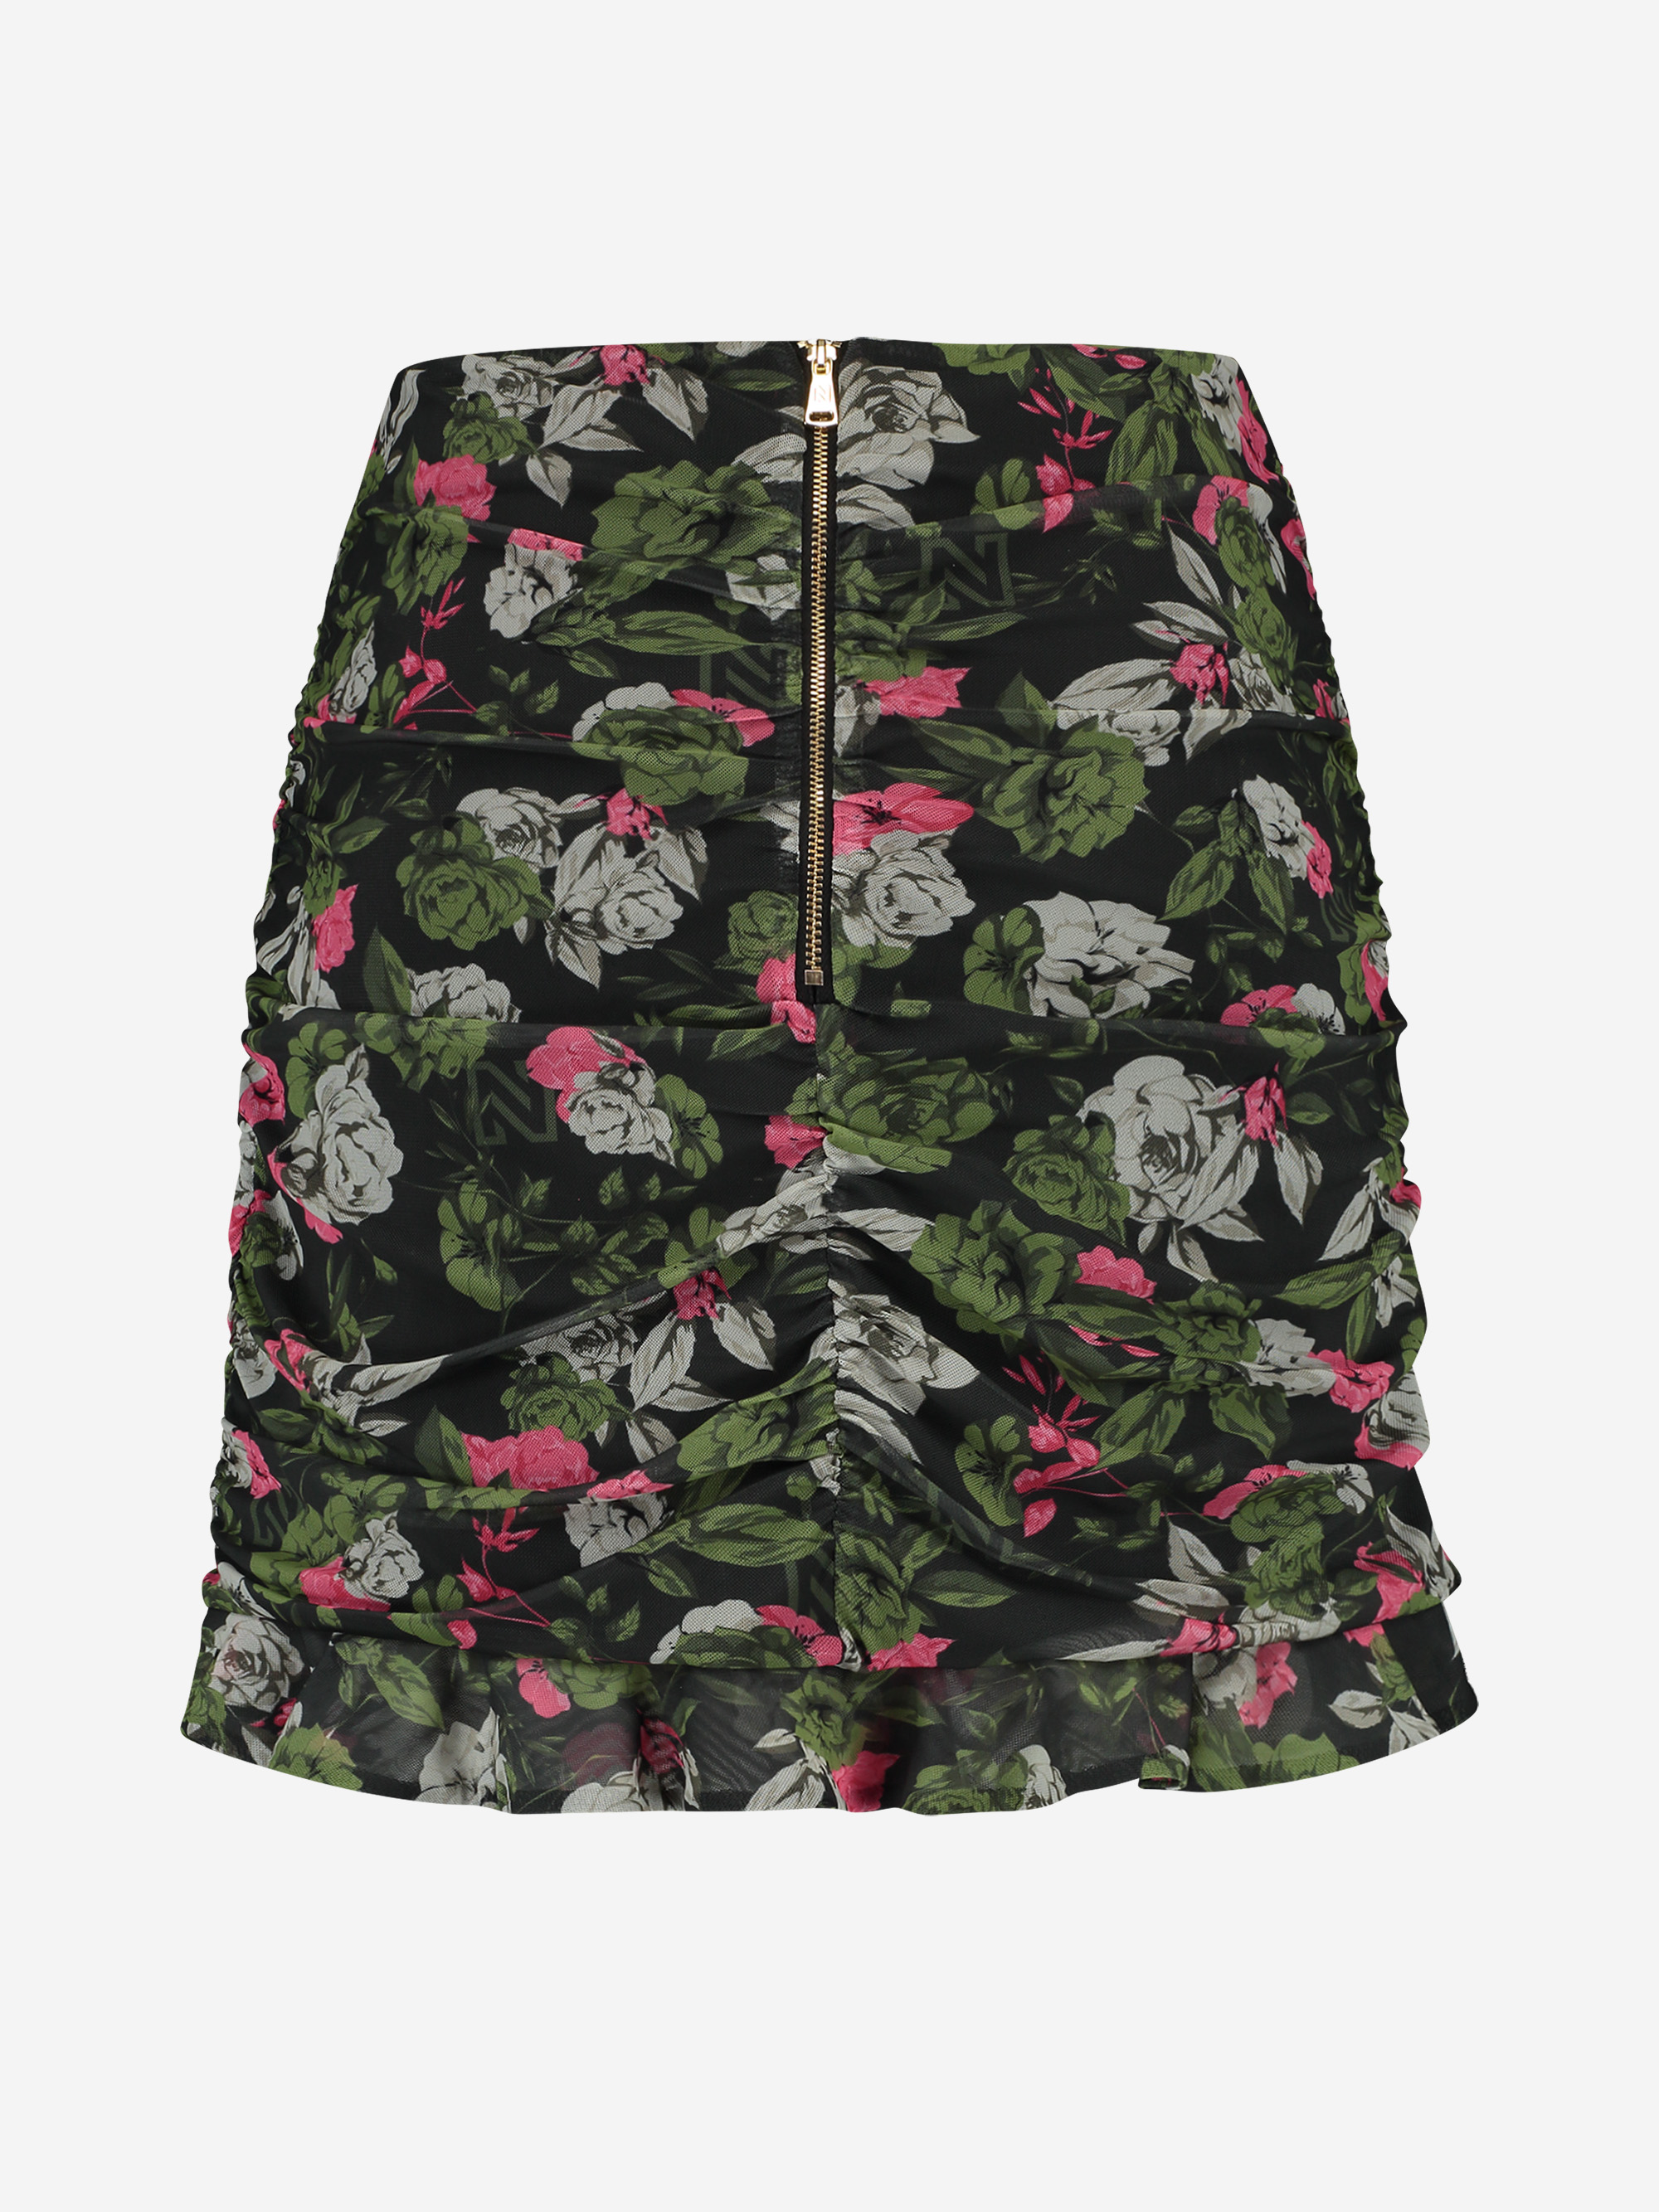 Mesh skirt with flower pint